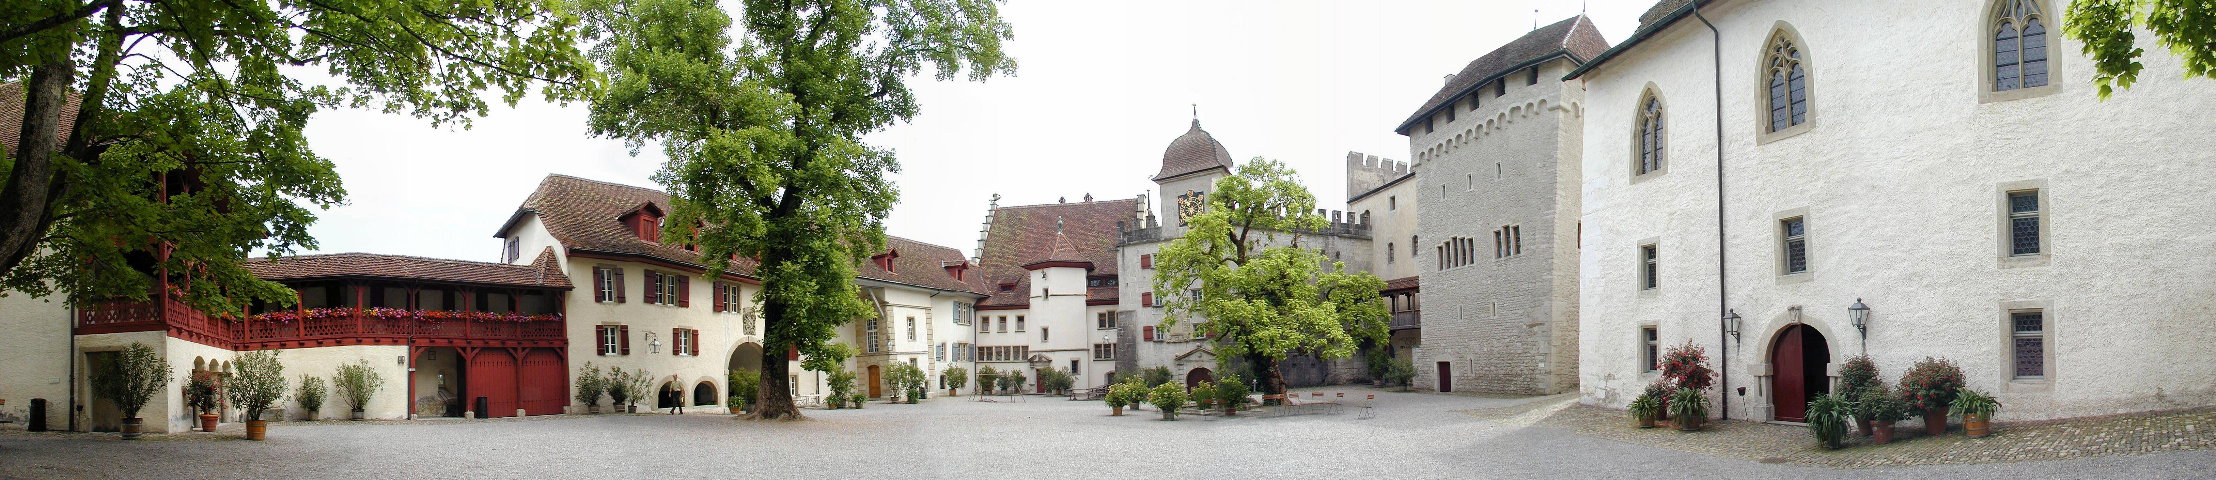 castle / Schloss Lenzburg